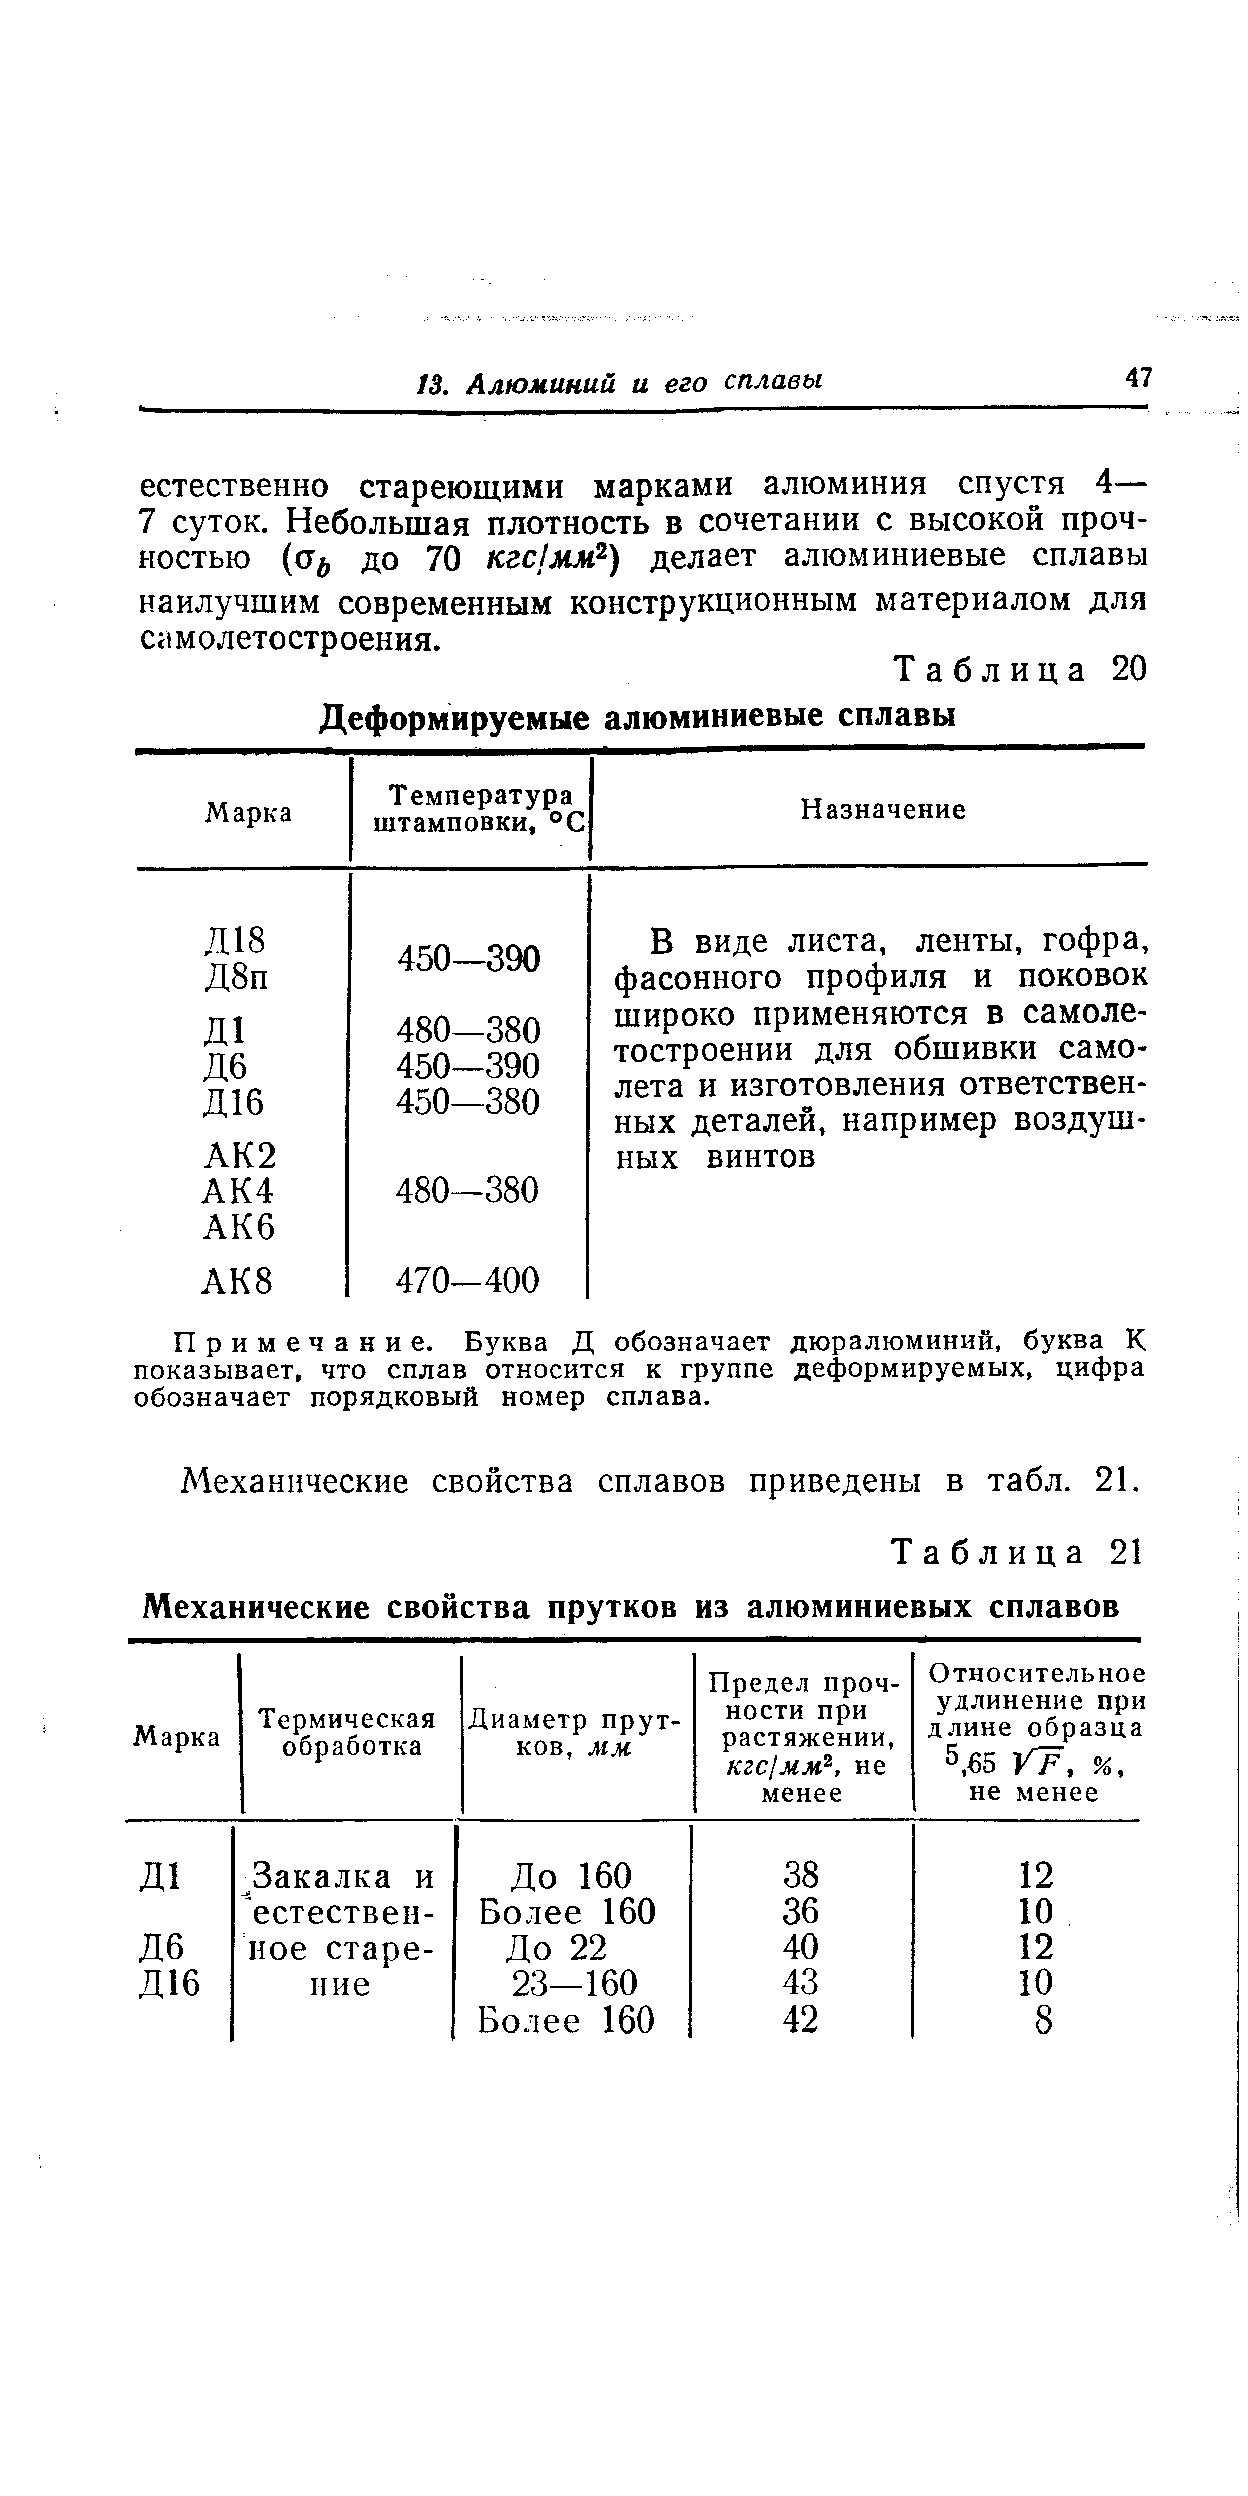 Таблица 21 Механические свойства прутков из алюминиевых сплавов
